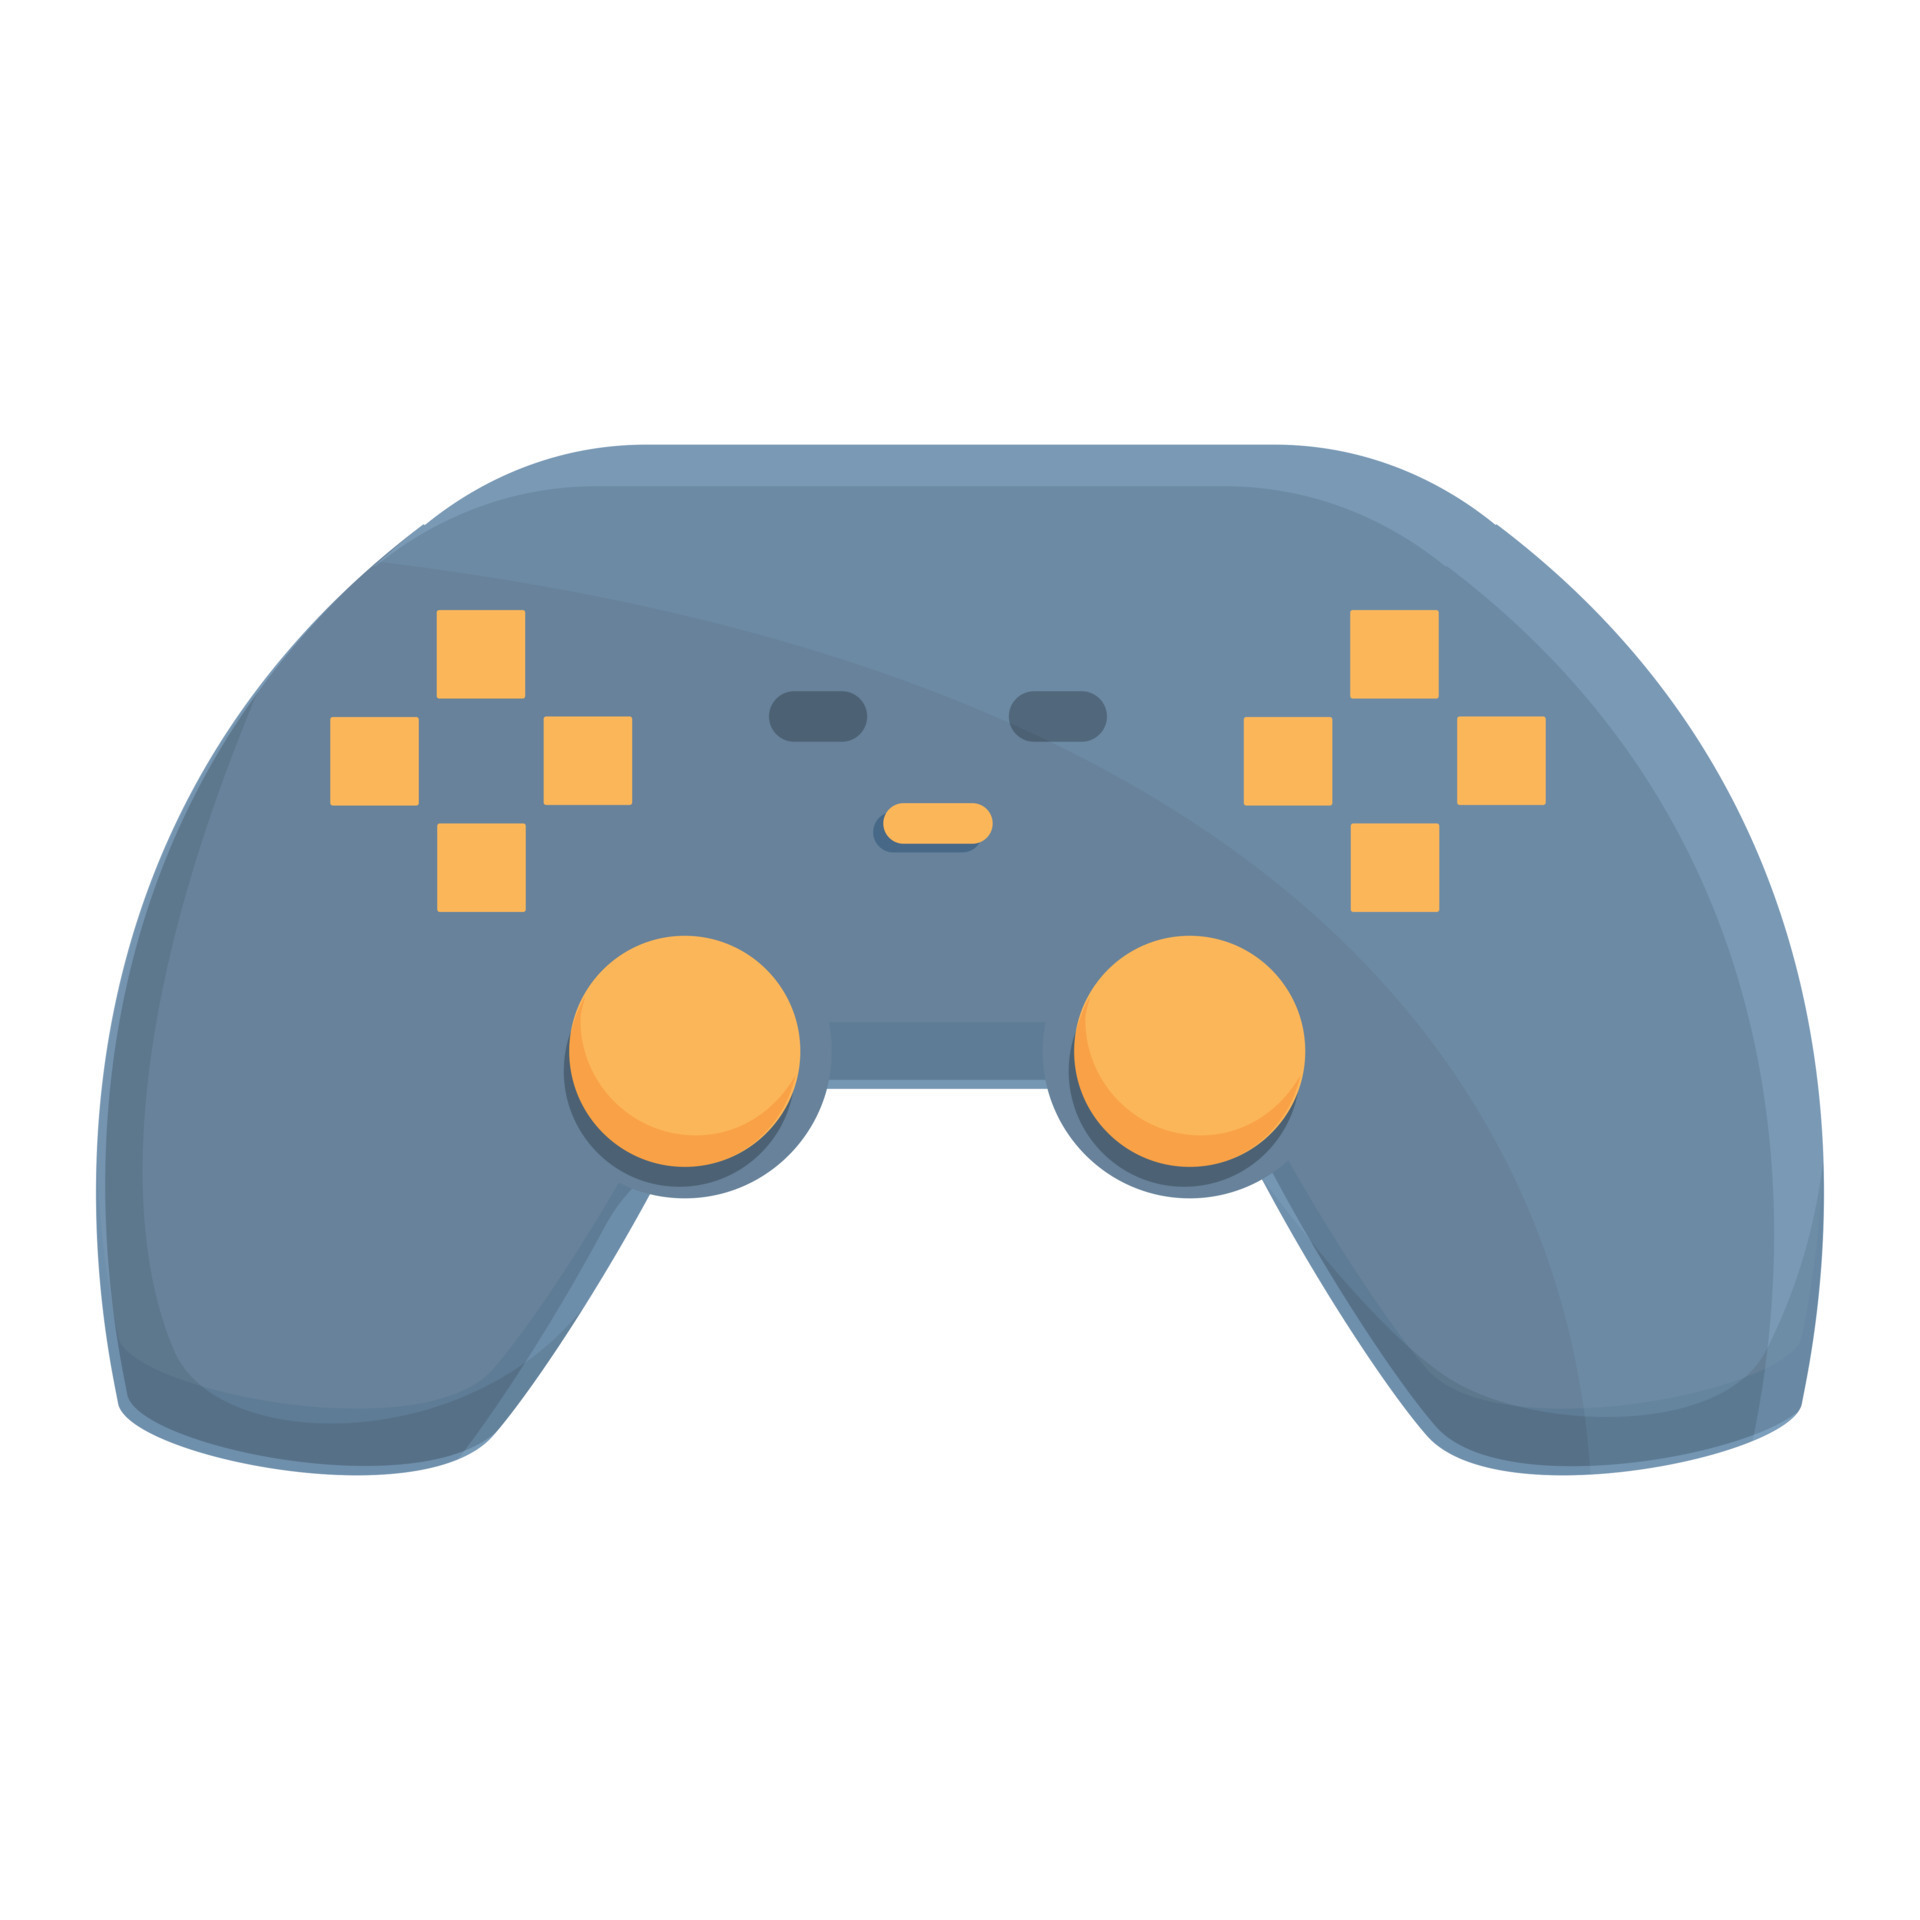 Jogos de desenho animado com logotipo de joystick